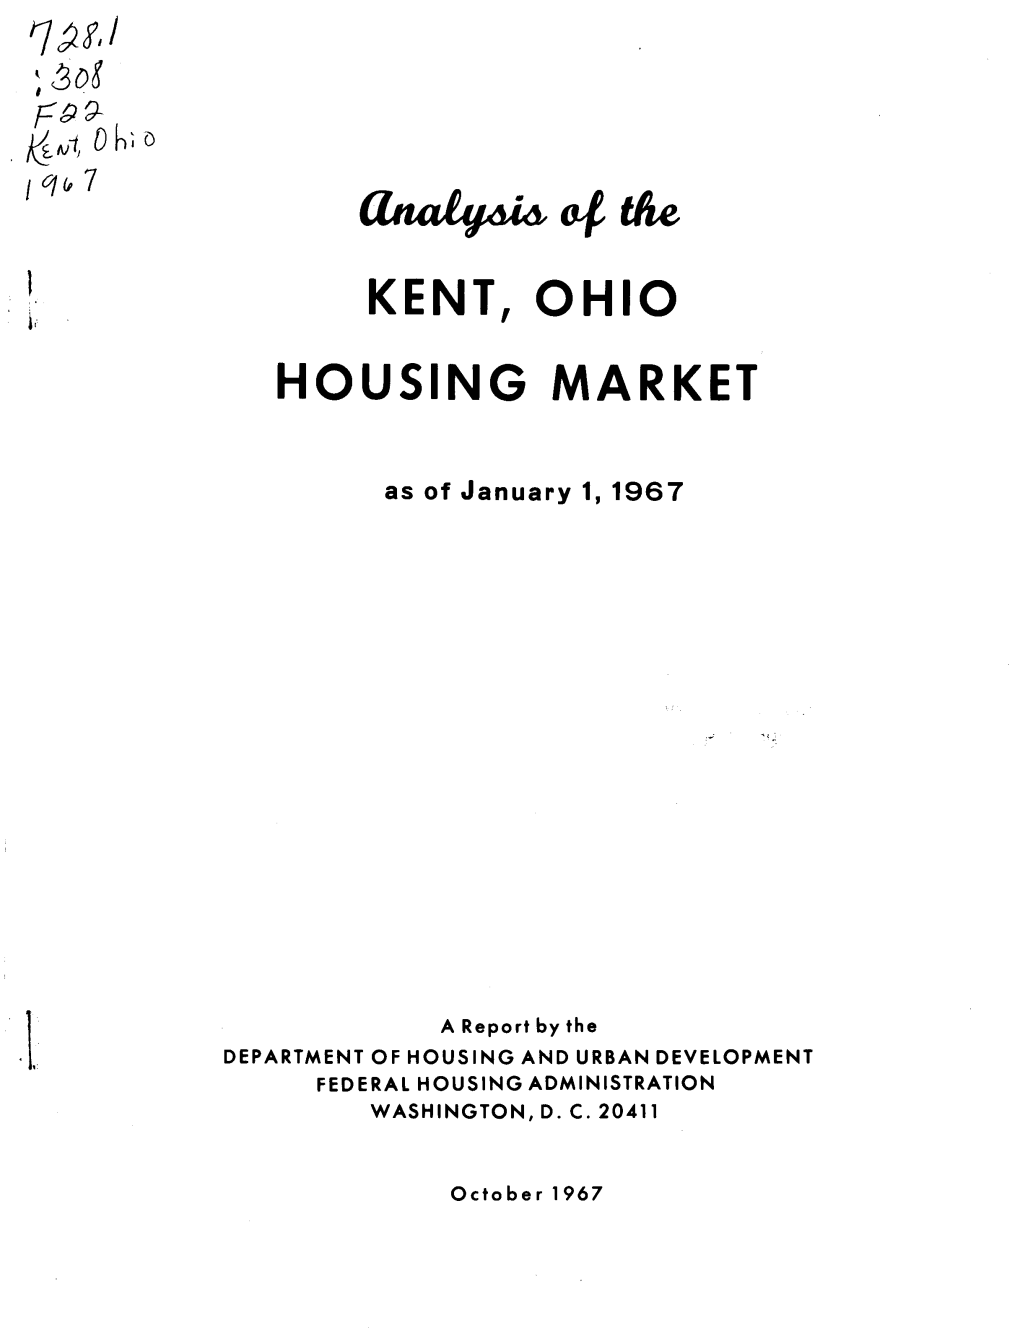 Analysis of the Kent, Ohio Housing Market (1967)